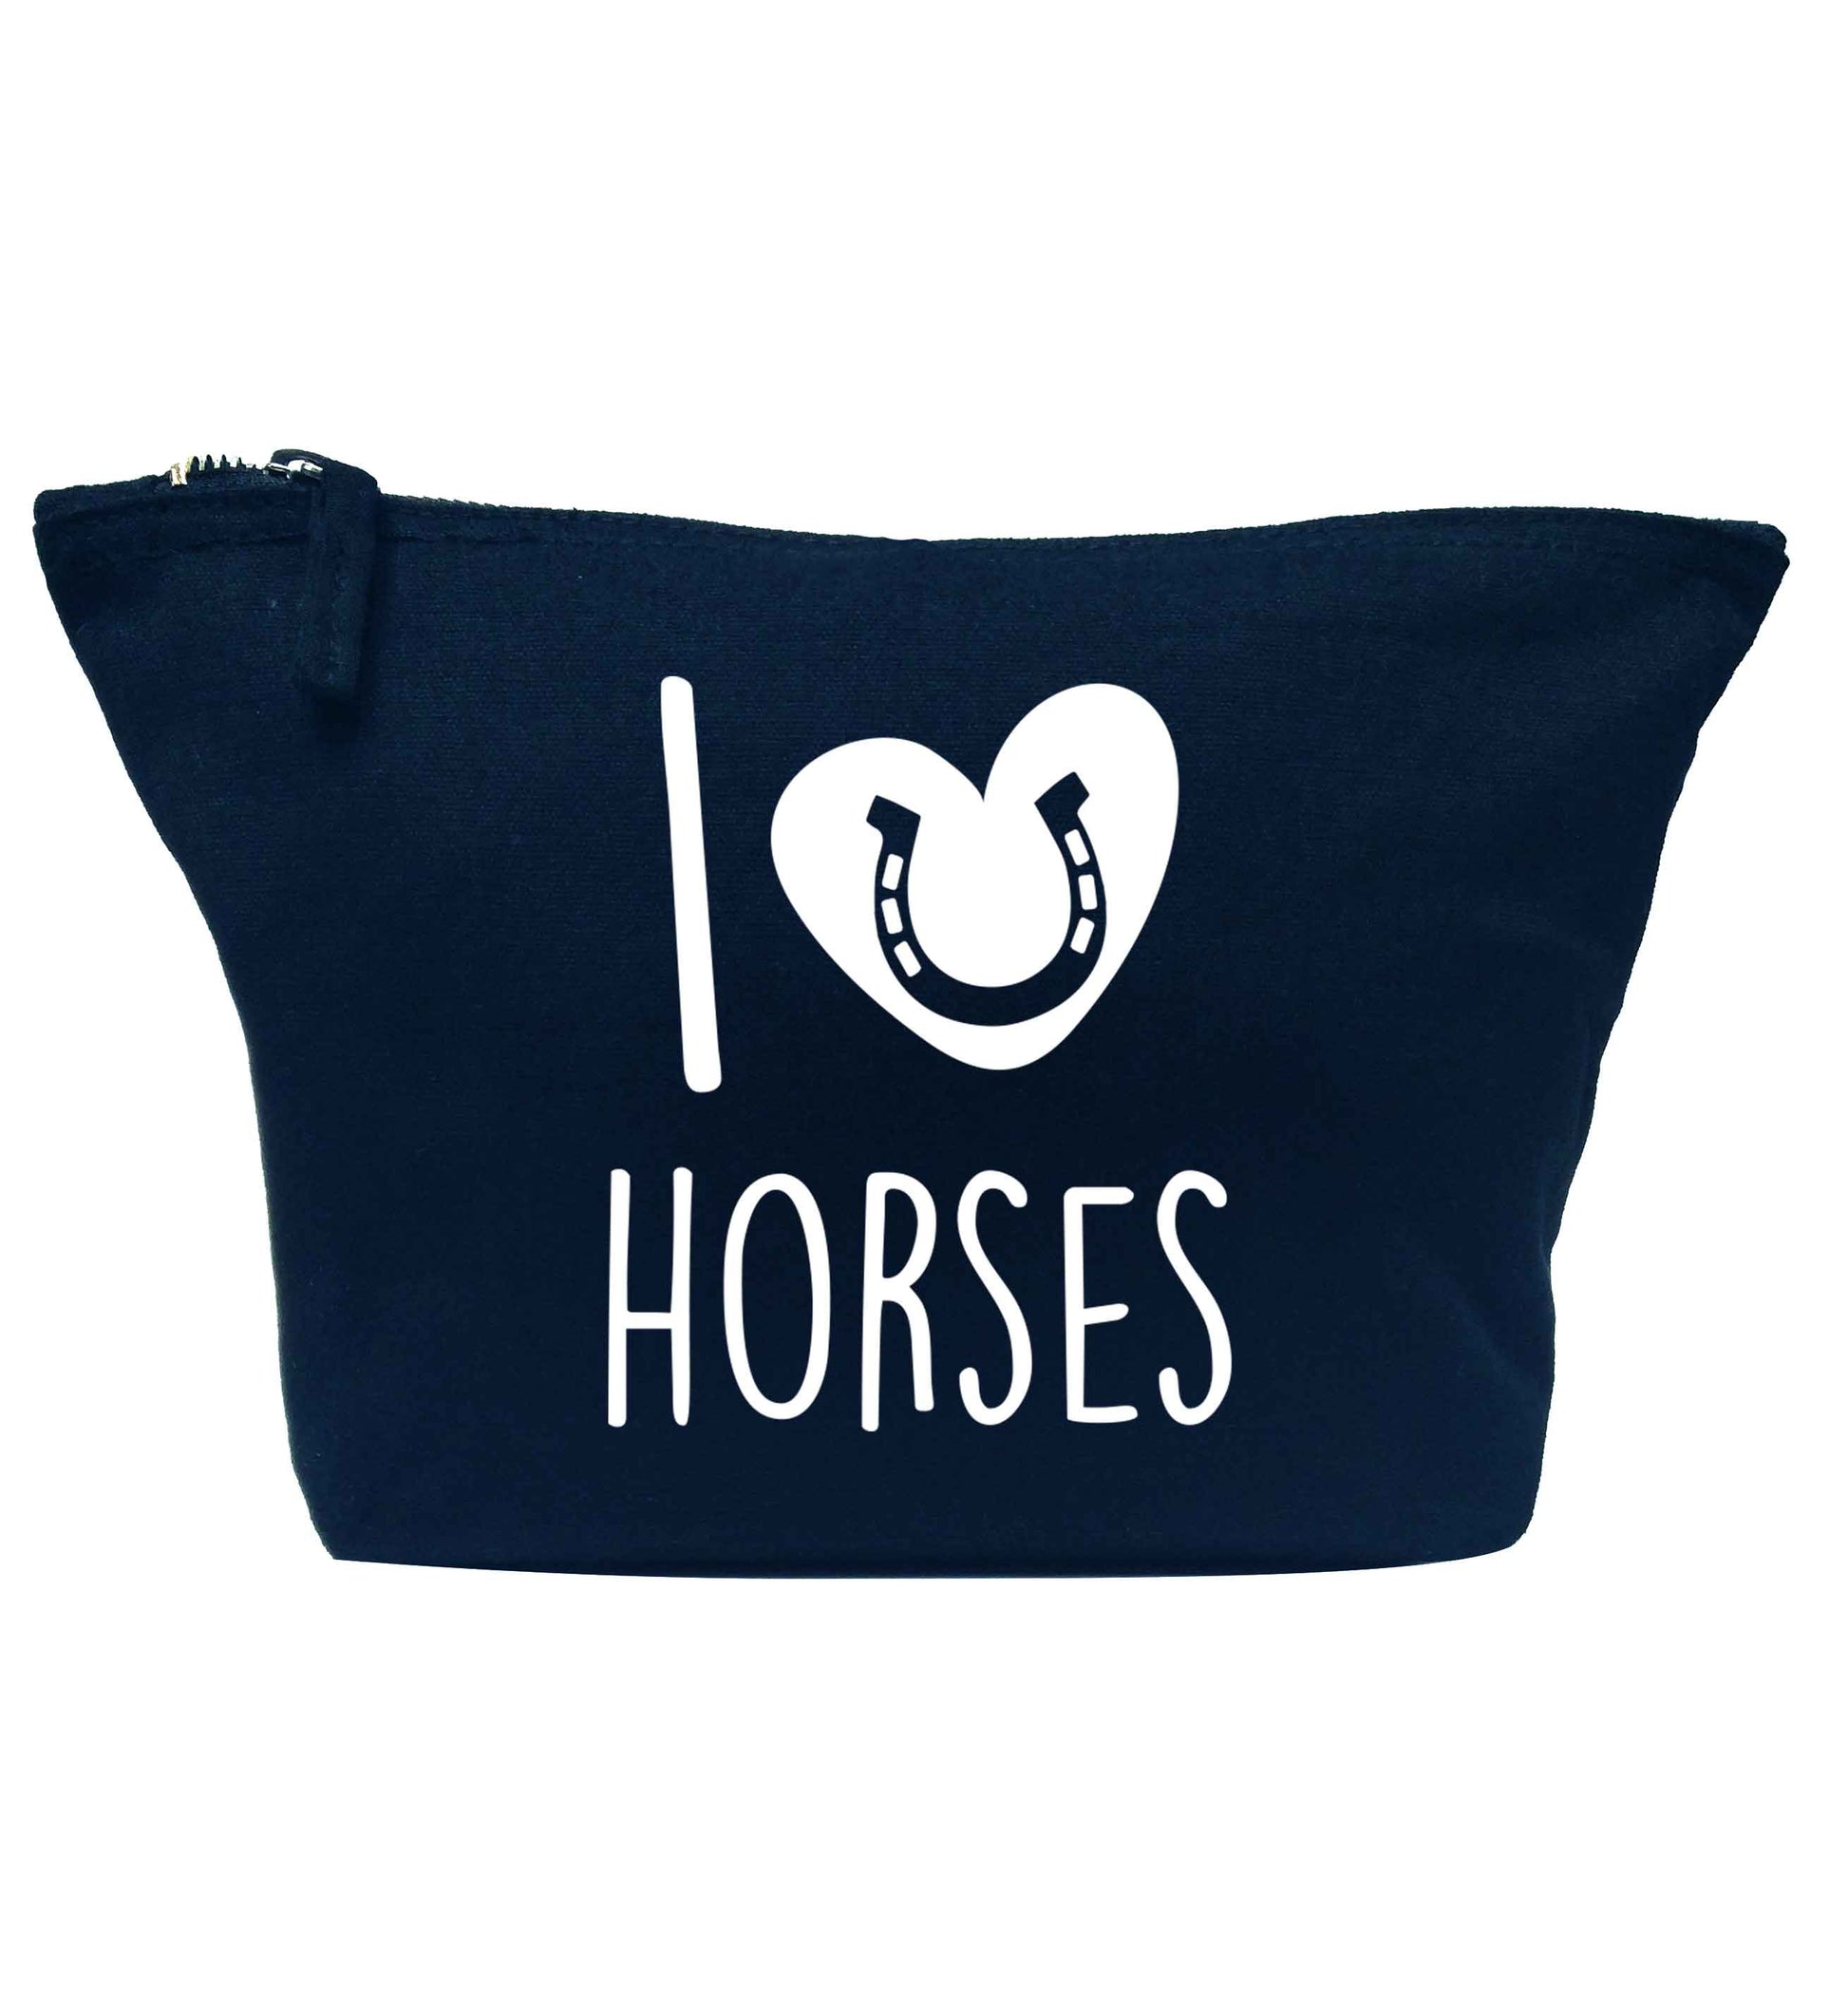 I love horses navy makeup bag